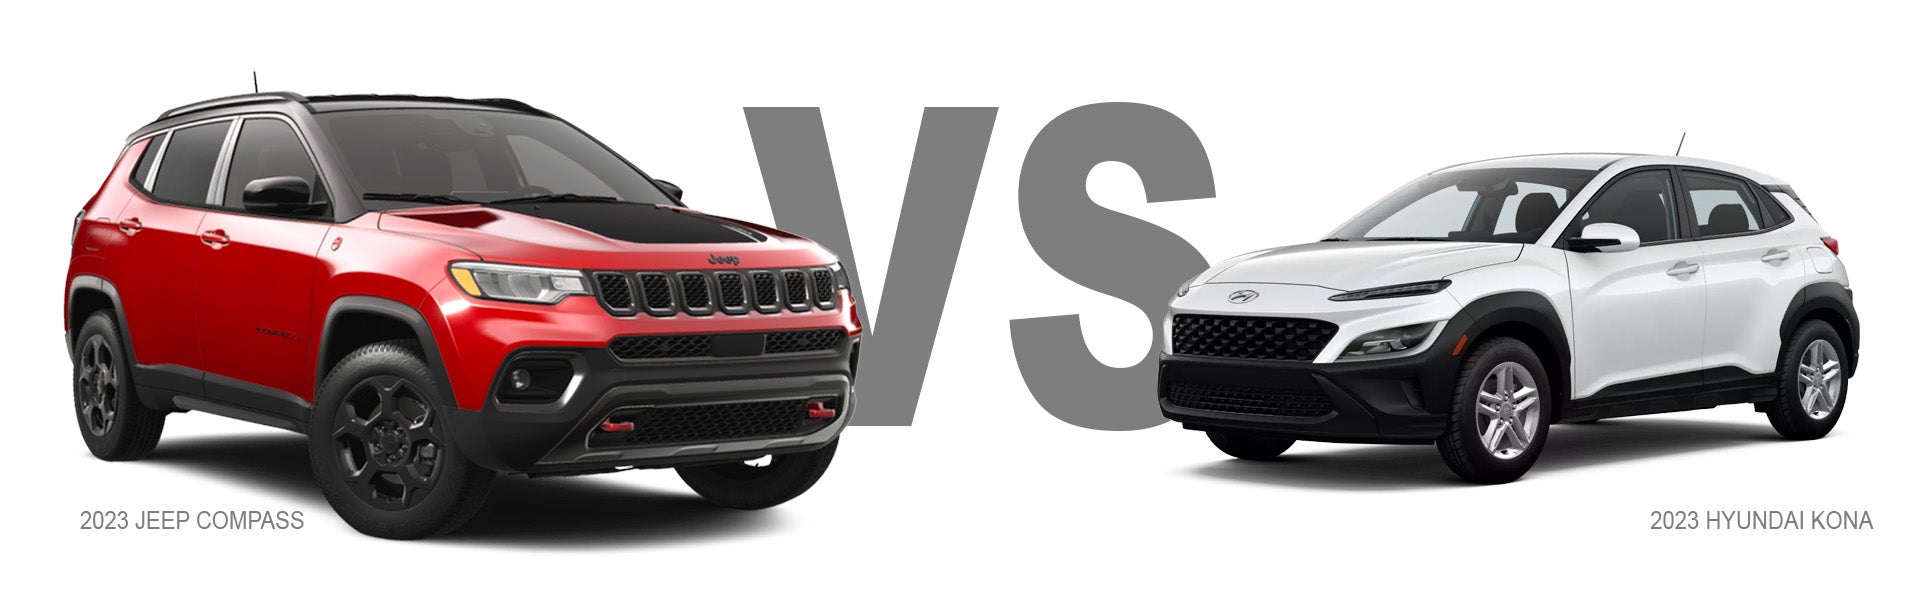 Jeep Compass vs Hyundai Kona Compact CUV Comparison